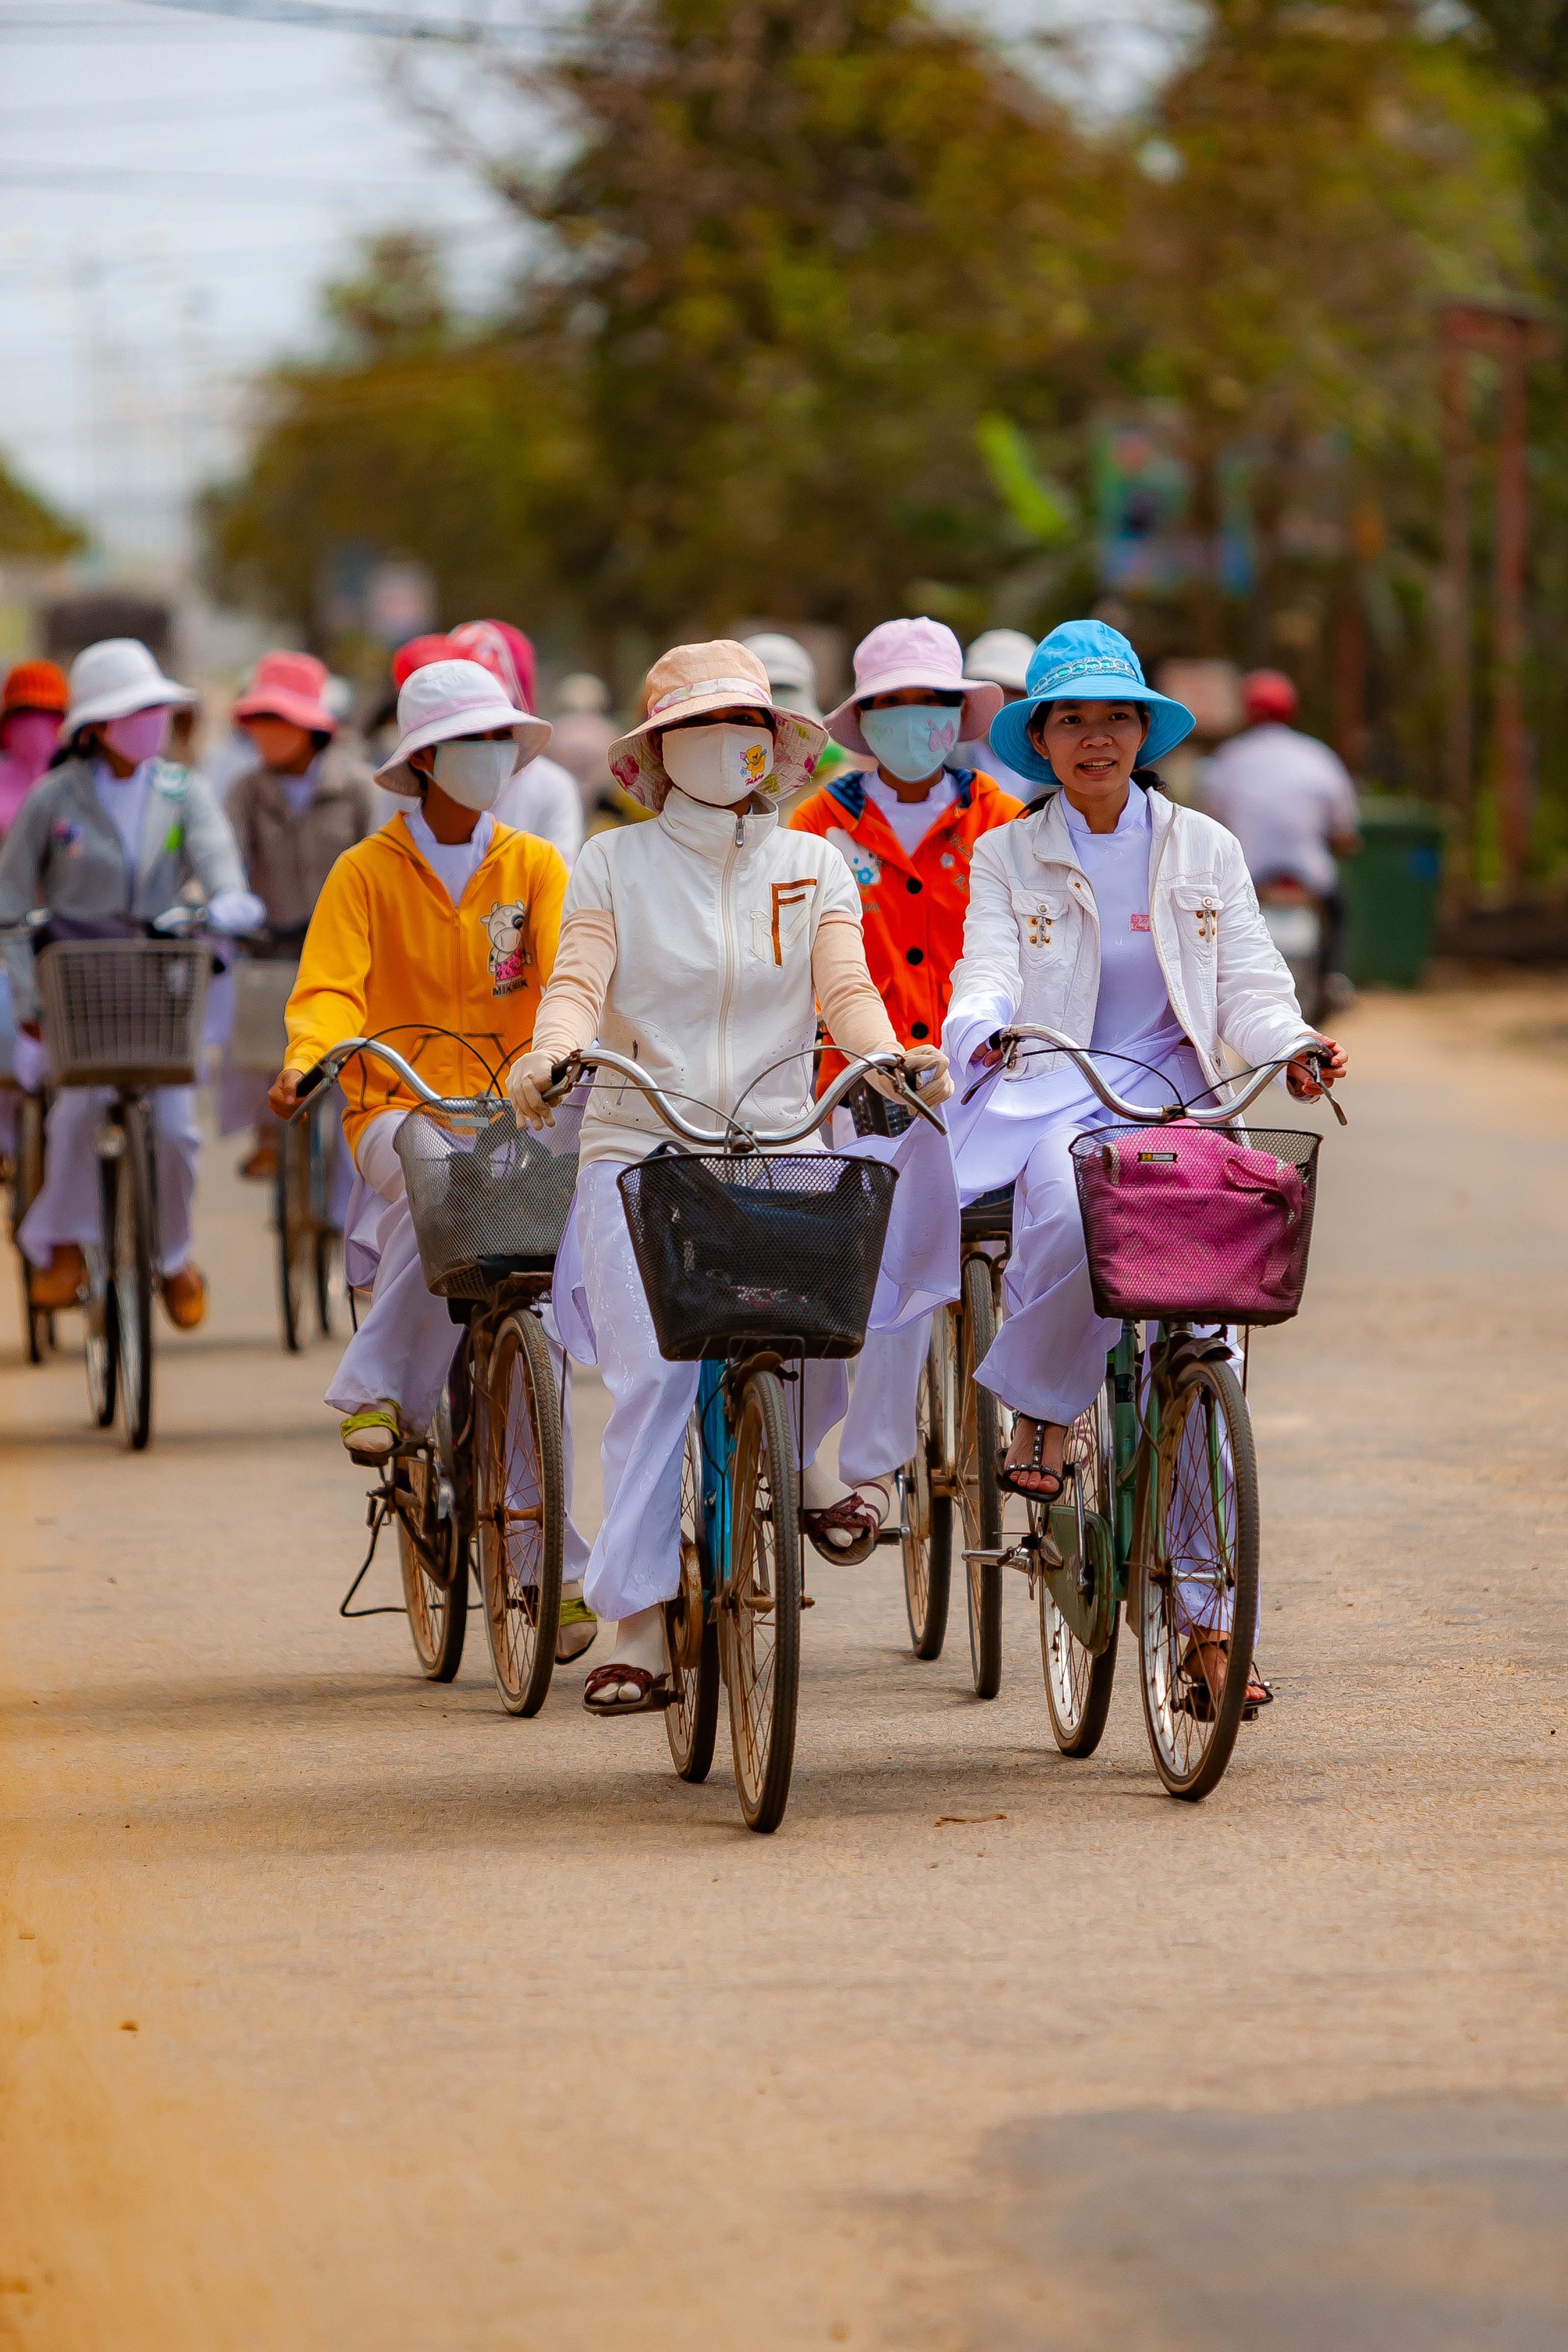 Vietnam, Quang Ngai Prov, Women On Bicycles, 2010, IMG 2597